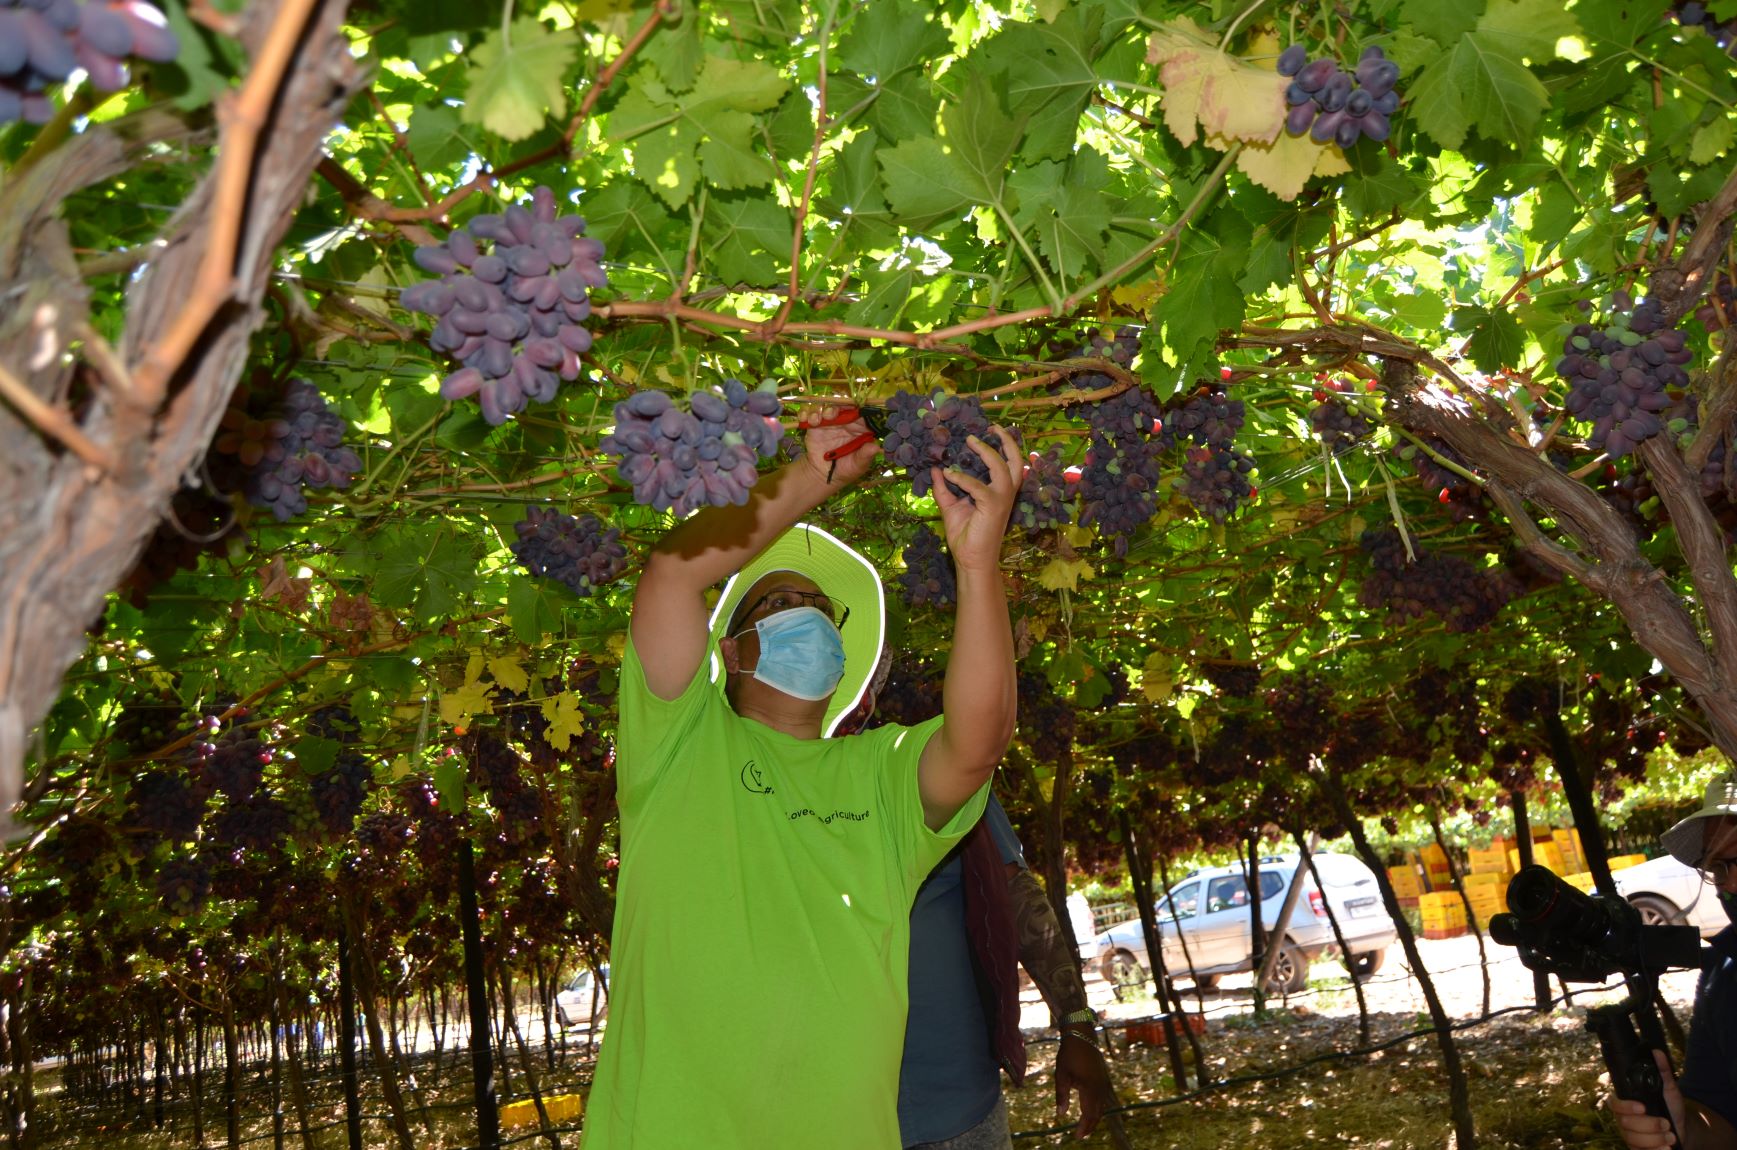 Minister Meyer picks grapes